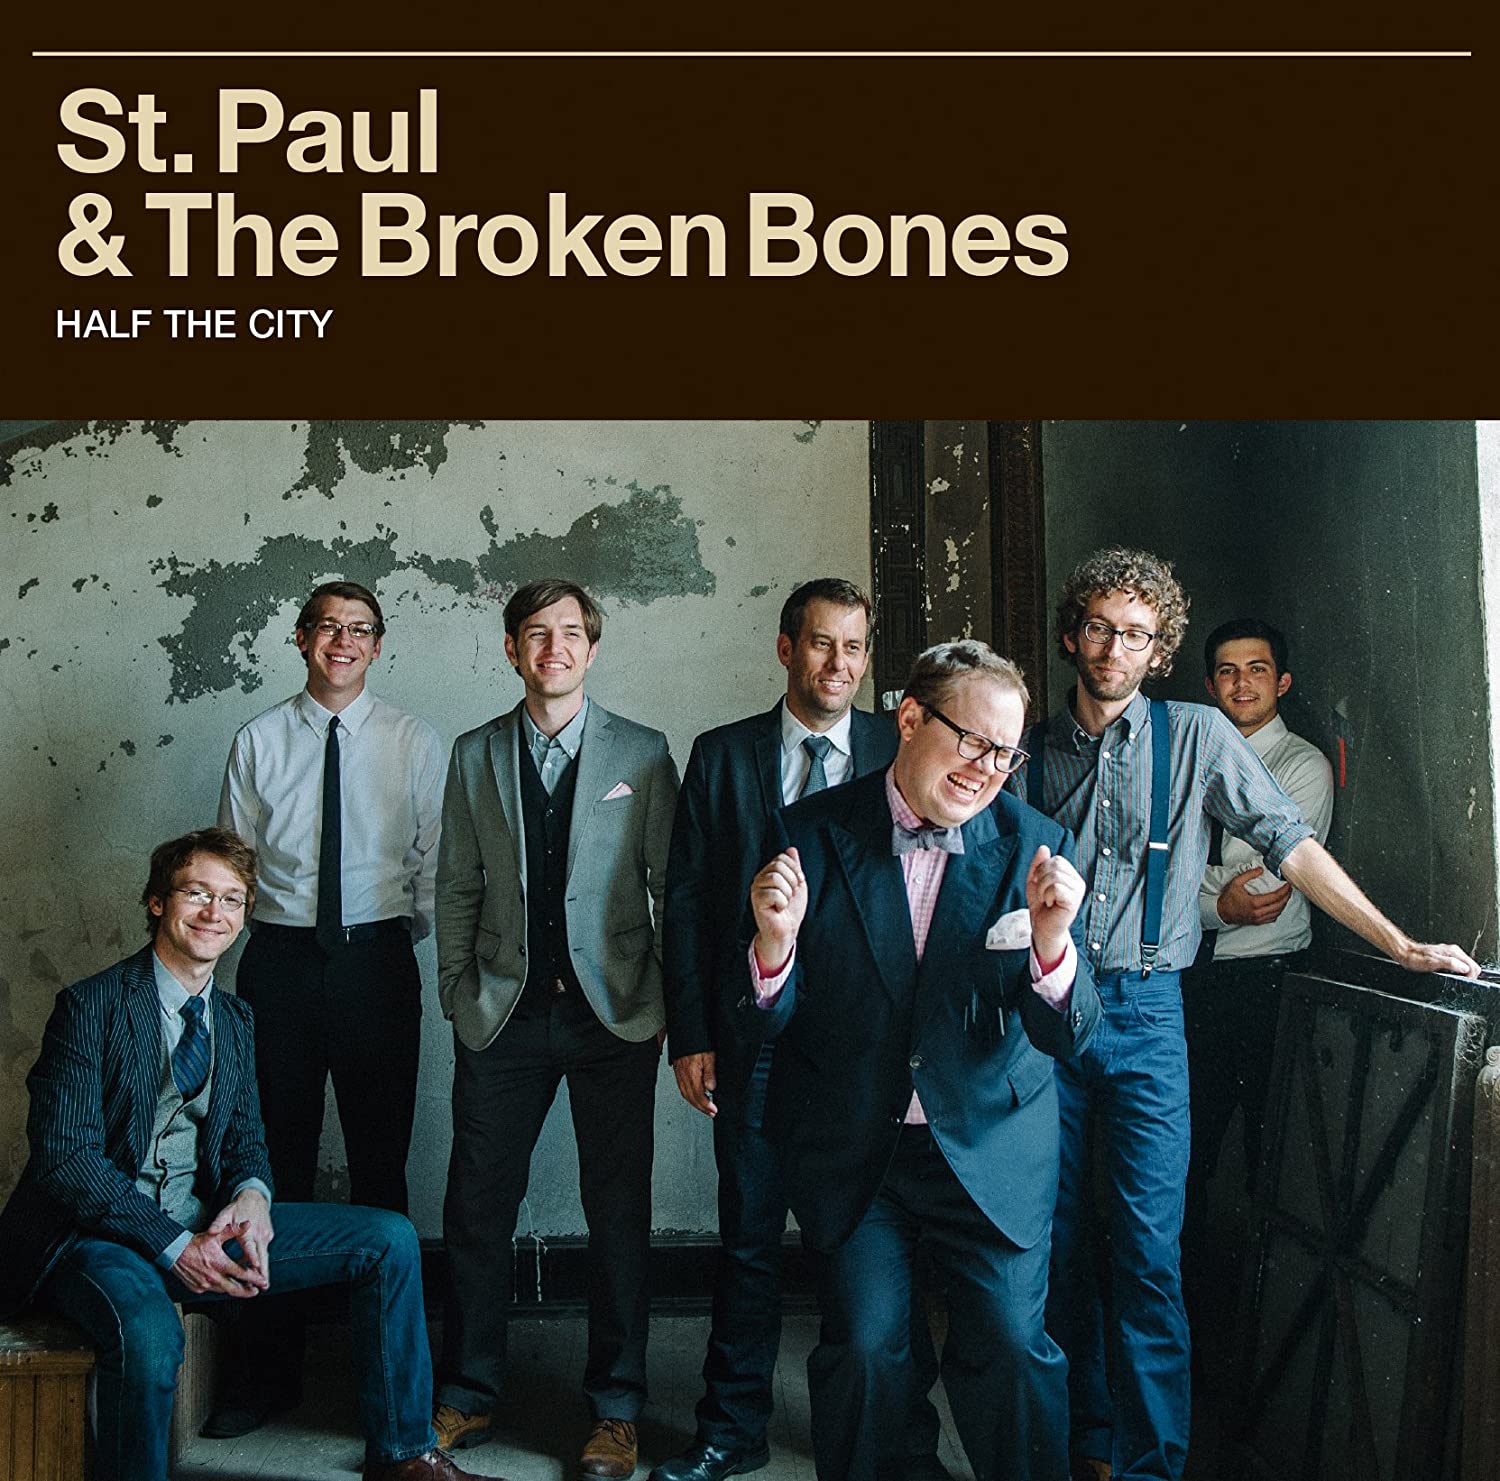 st-paul--the-broken-bones--nuovo-album-e-tour---immagini-st-paul--the-broken-bones--nuovo-album-e-tour---immagini_(8).jpg